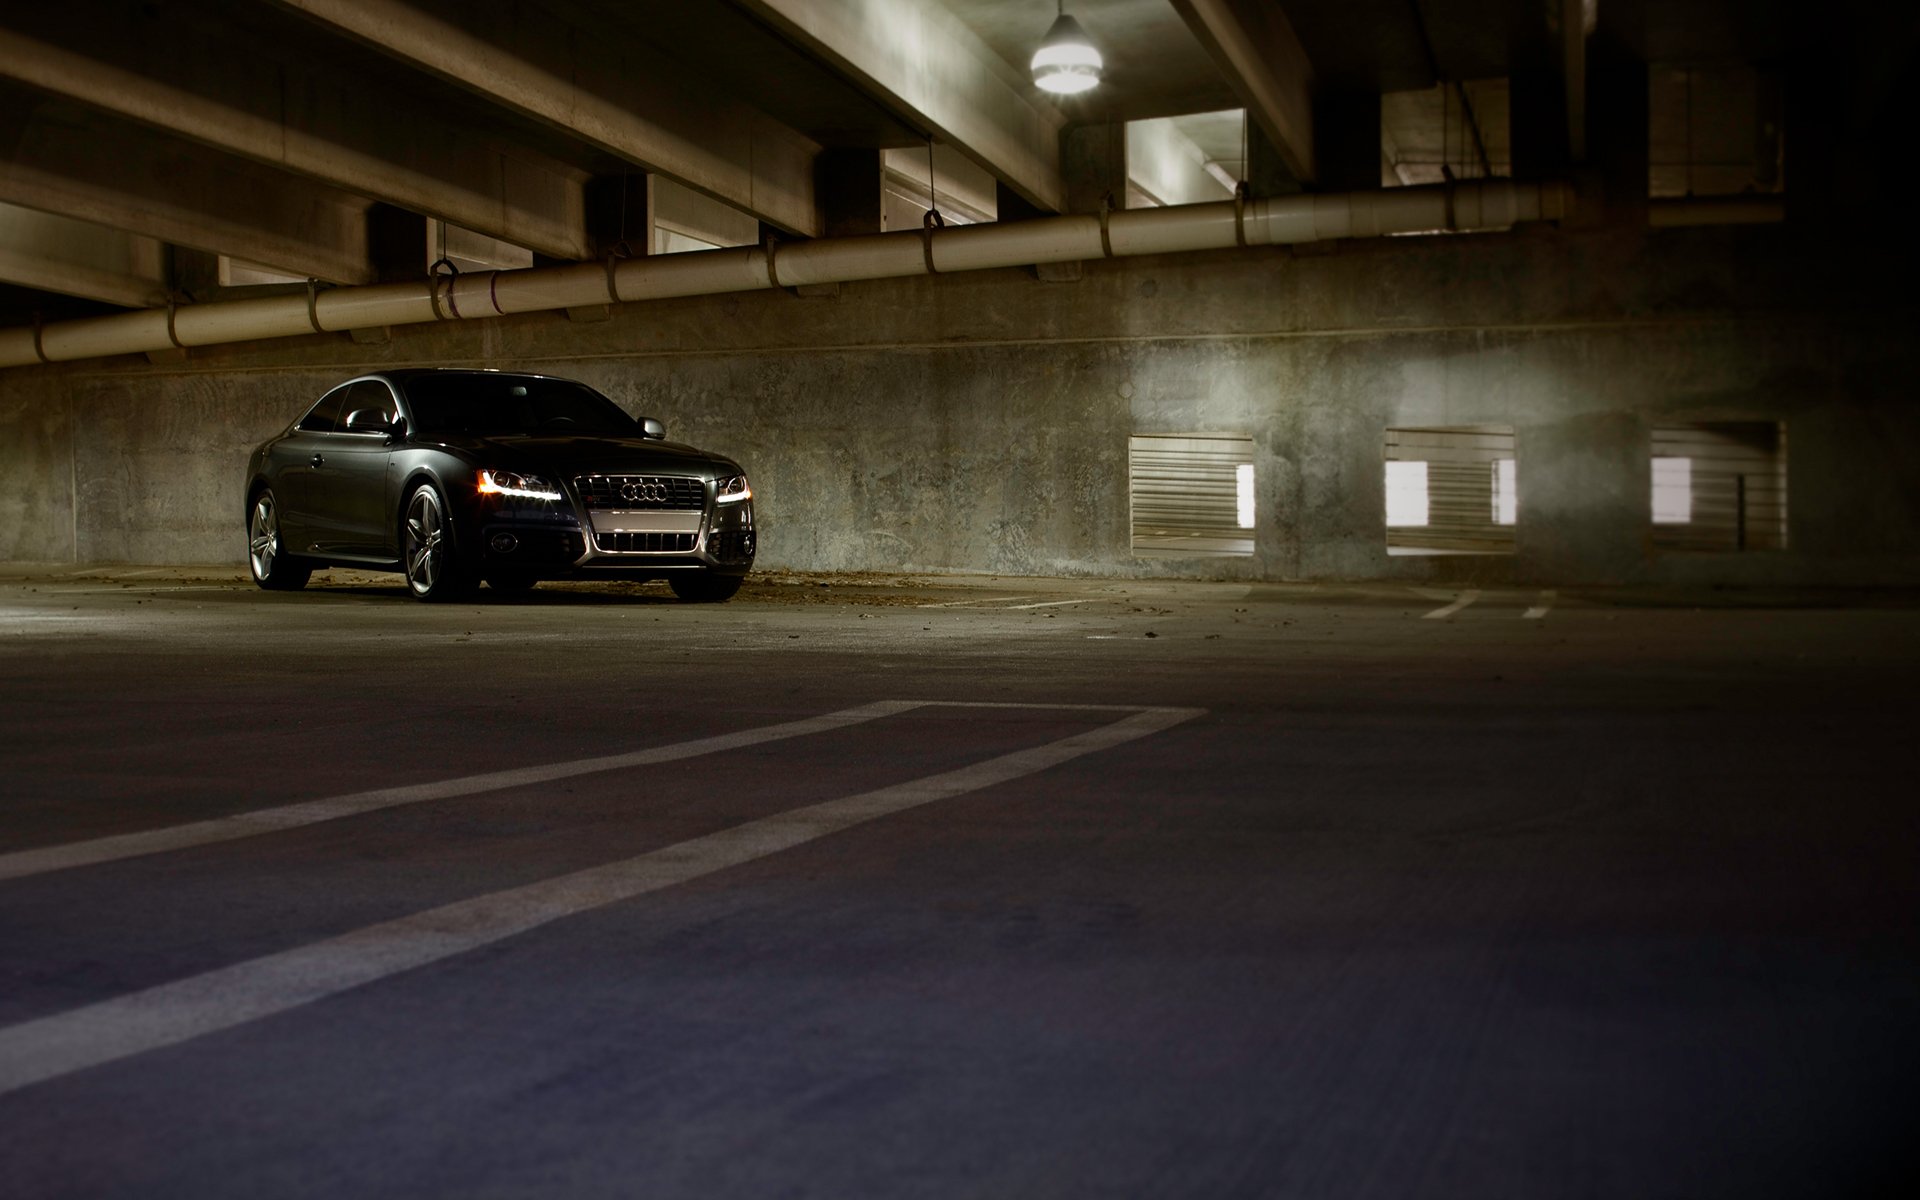 Машина фон для гачи. Кар паркинг Додж Чарджер. Машина в паркинге. Черные машины на парковке. Подземная парковка ночью.